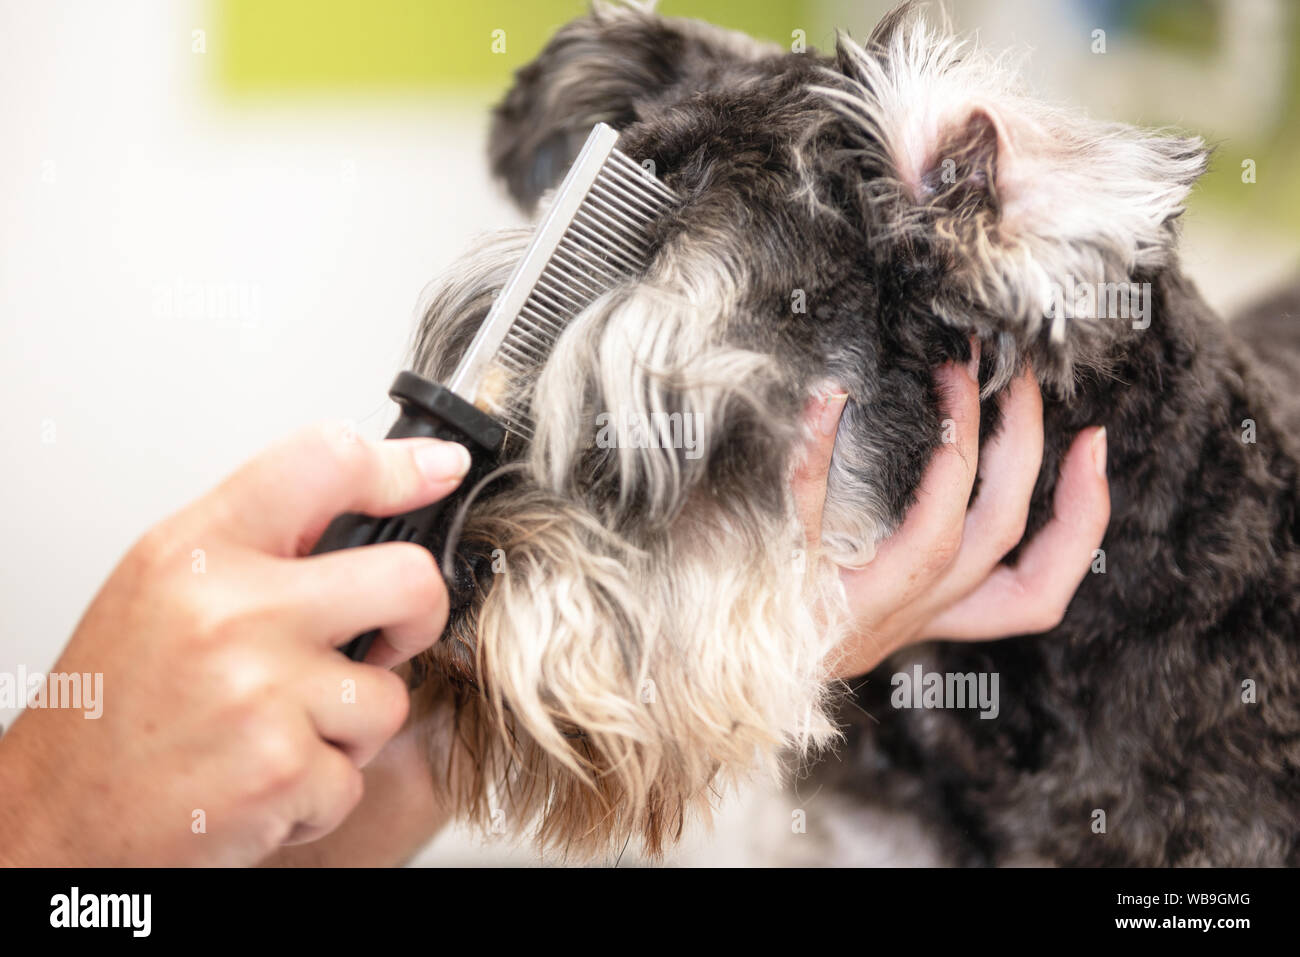 Professionelle groomer's Zwergschnauzer Hund kämmen die Haare mit einem Kamm  Stockfotografie - Alamy